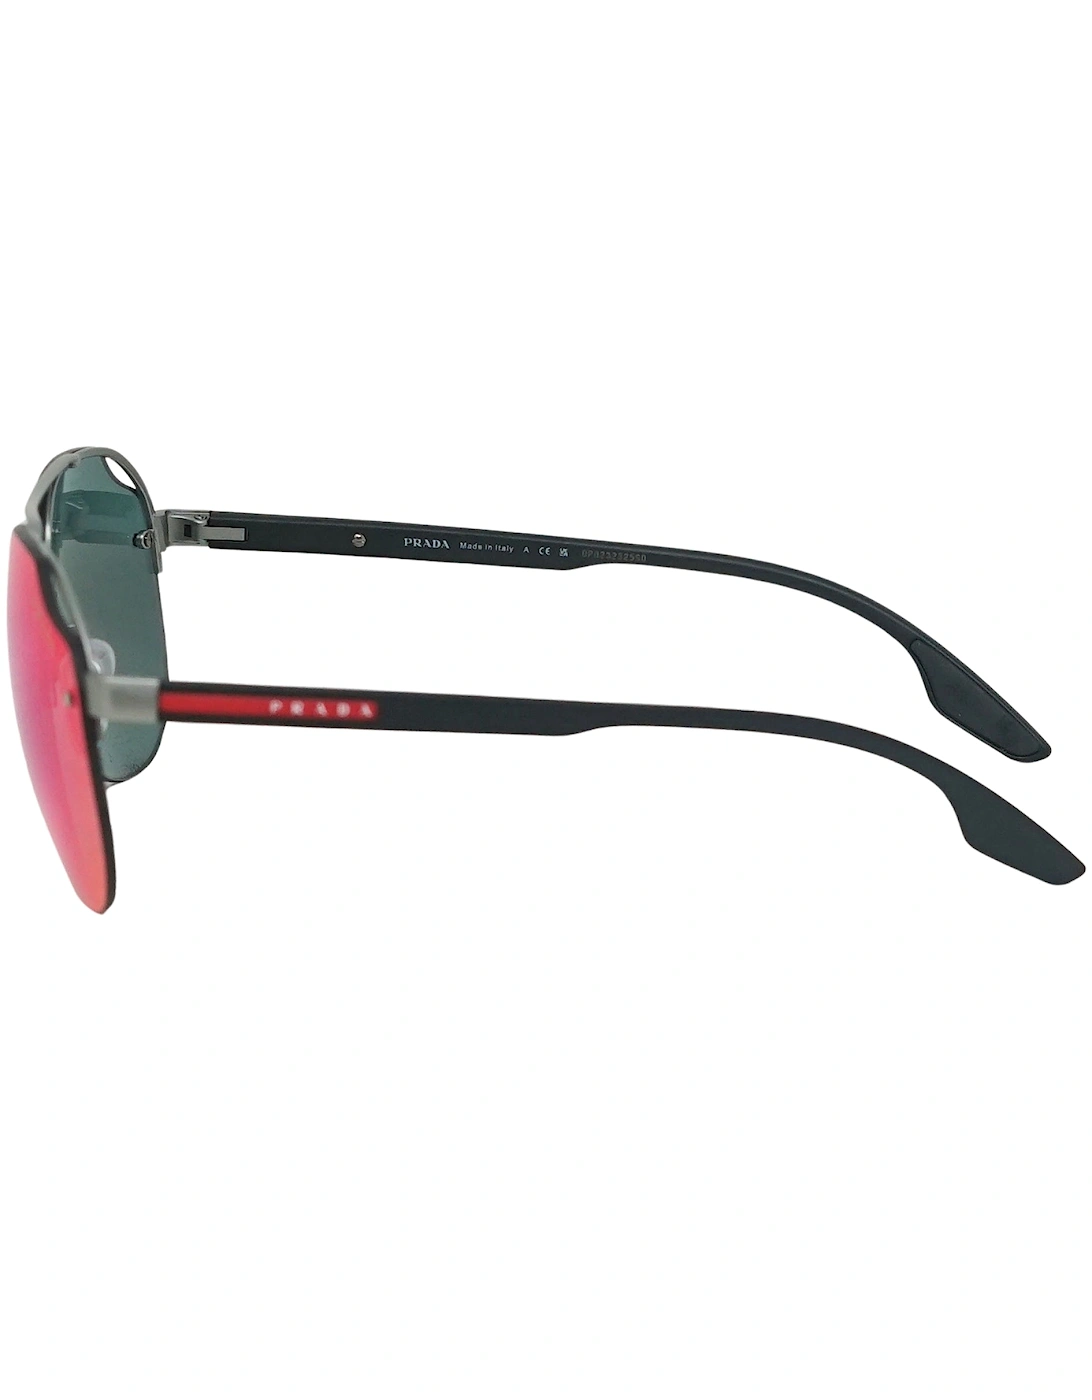 Sport PS52VS 7CQ9Q1 Silver Sunglasses